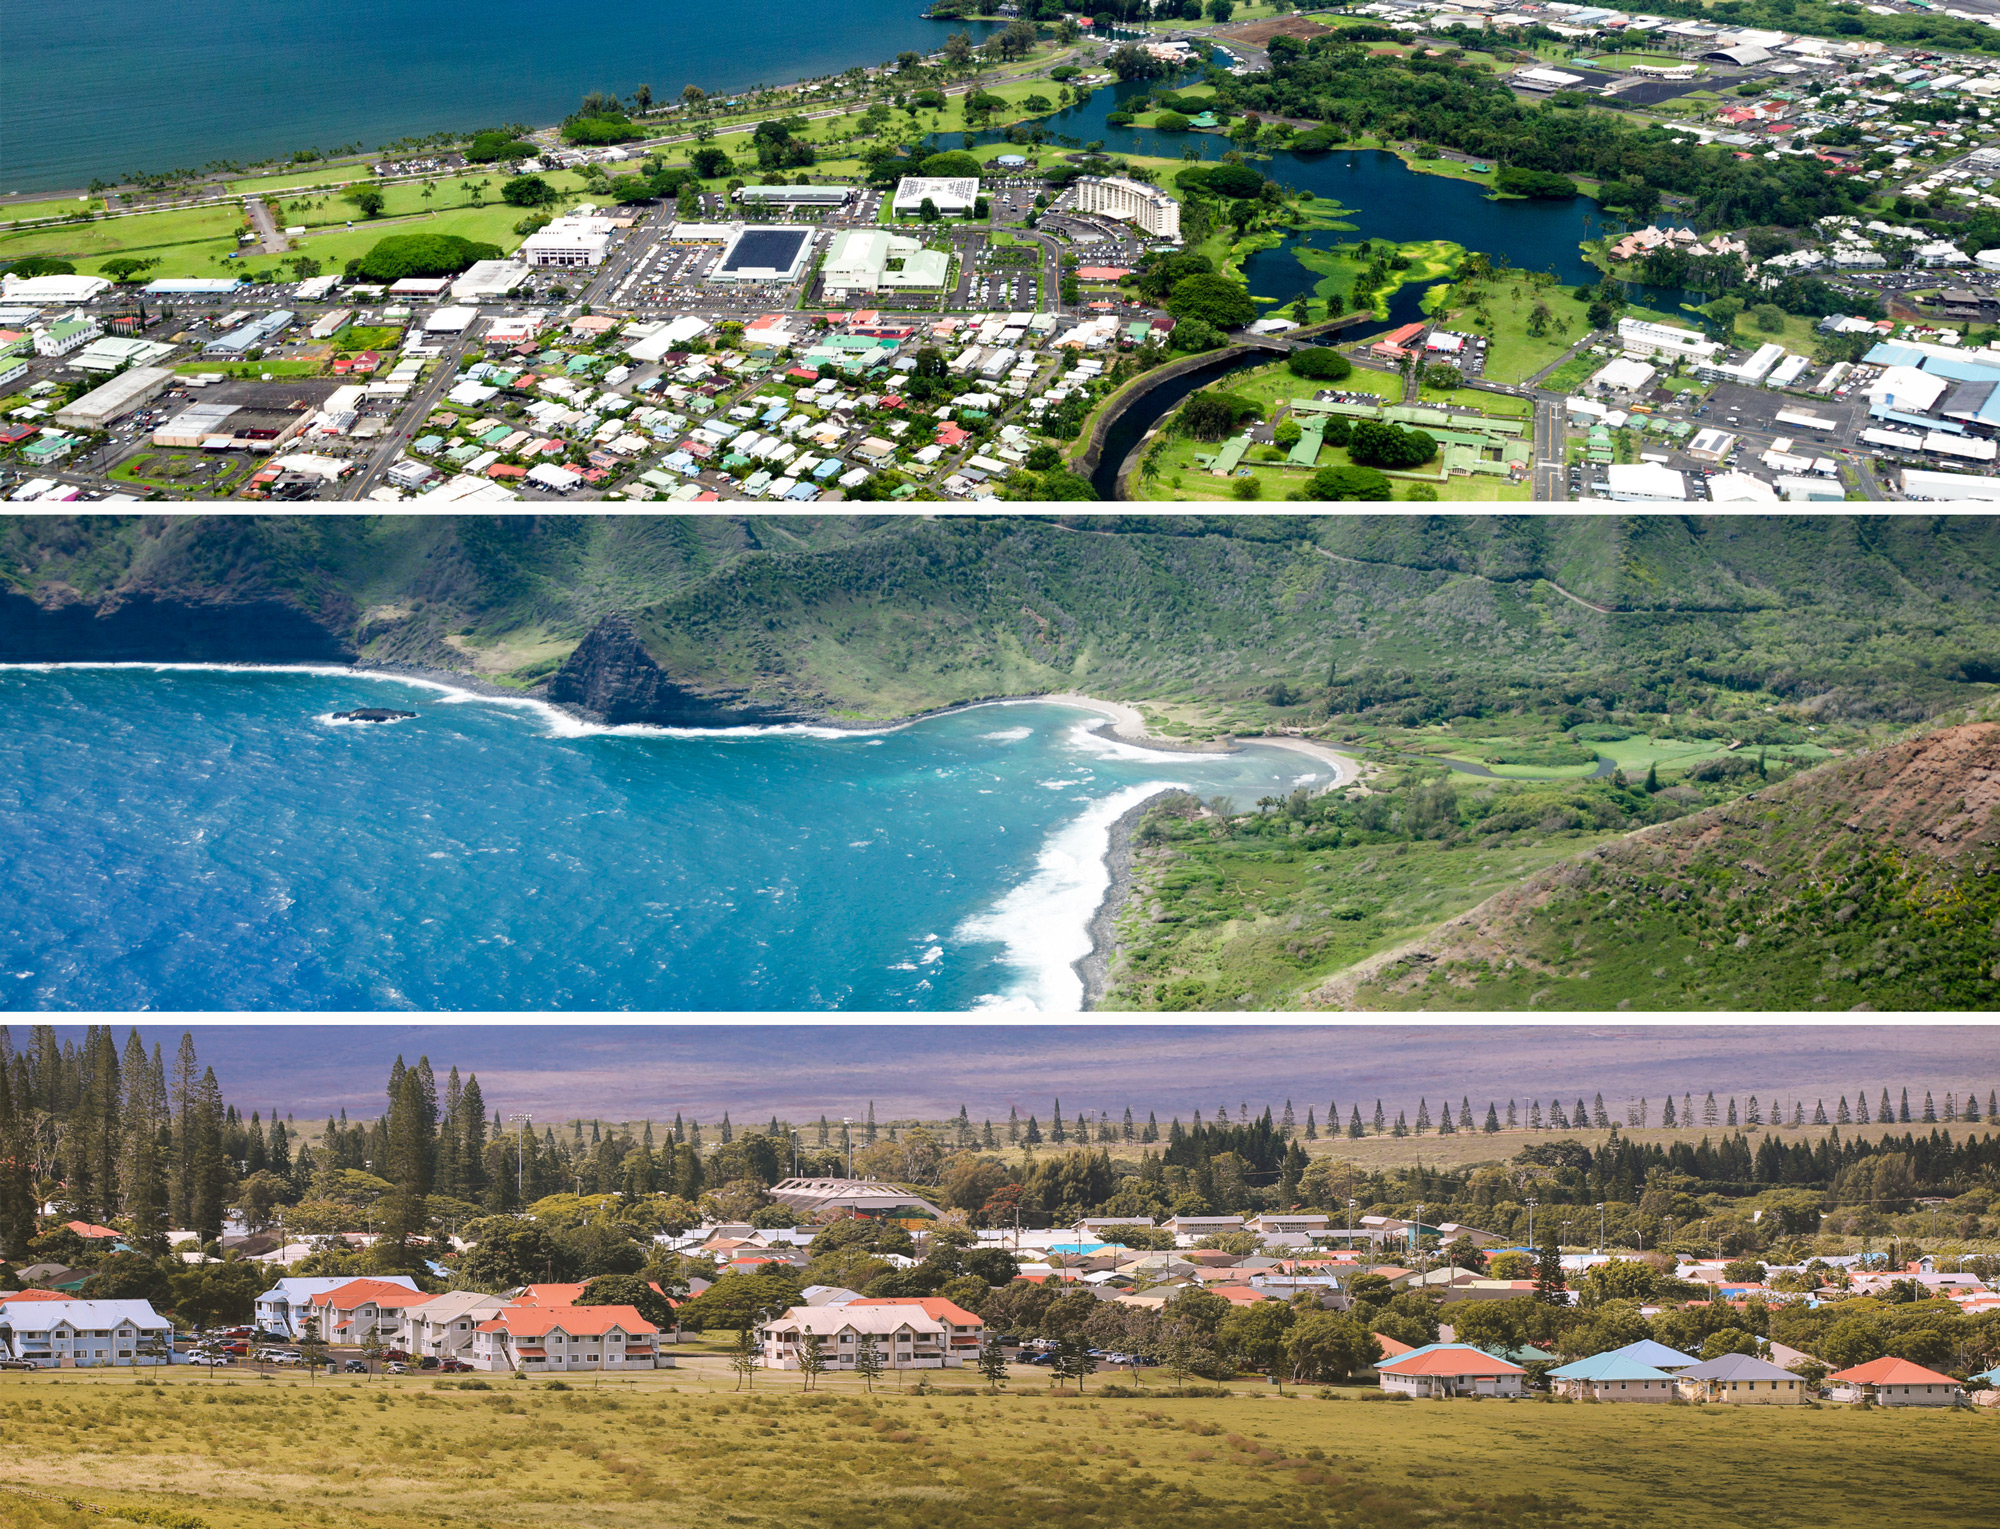 Scenes from different Hawaiian islands